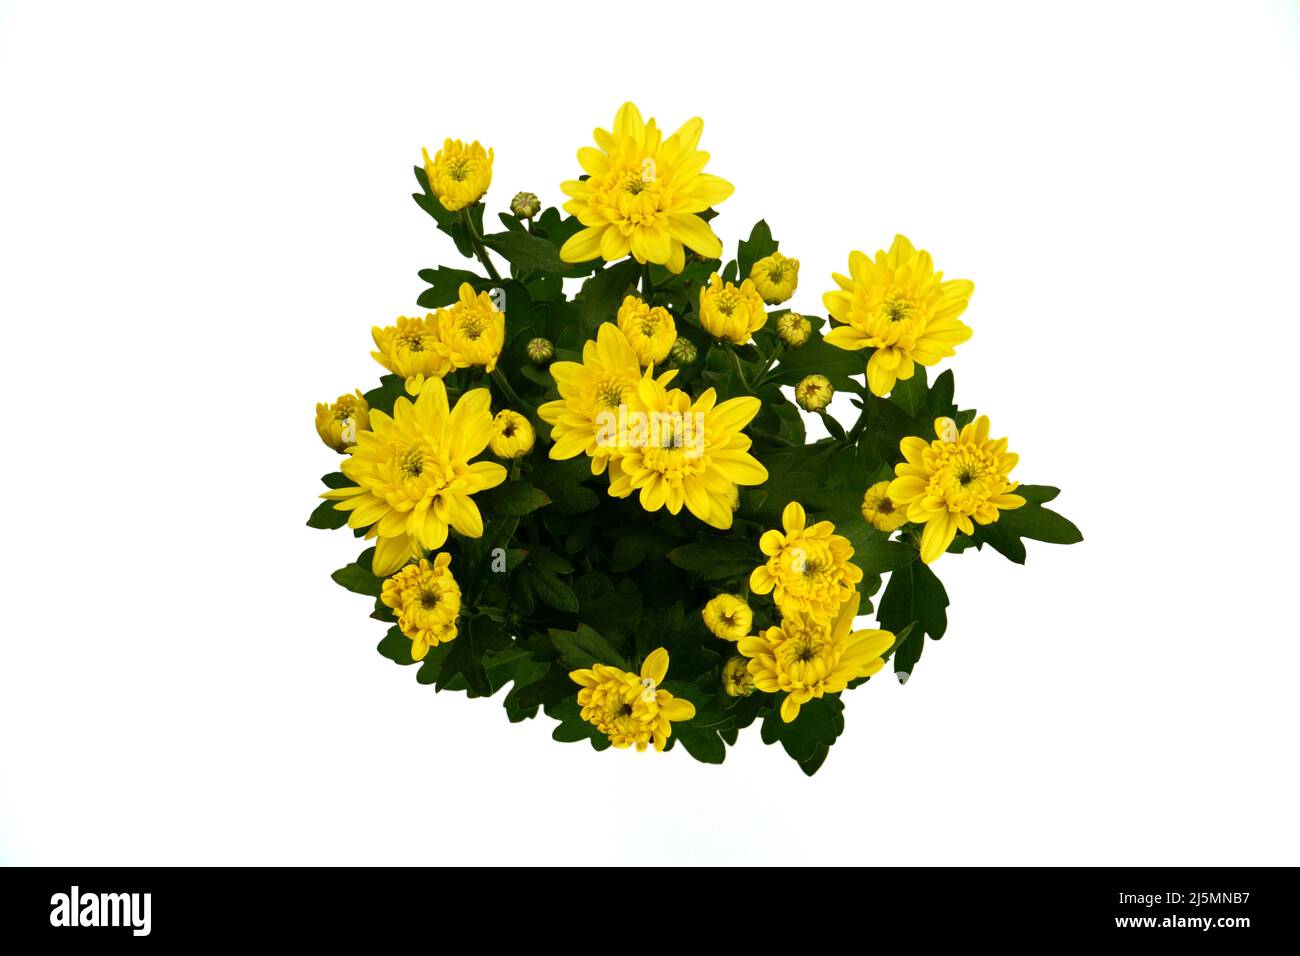 Vue de dessus de la plante à fleurs isolées de Chrysanthemum avec des fleurs jaunes sur fond blanc. Échantillon de l'offre de marché des plantes de maison. Banque D'Images